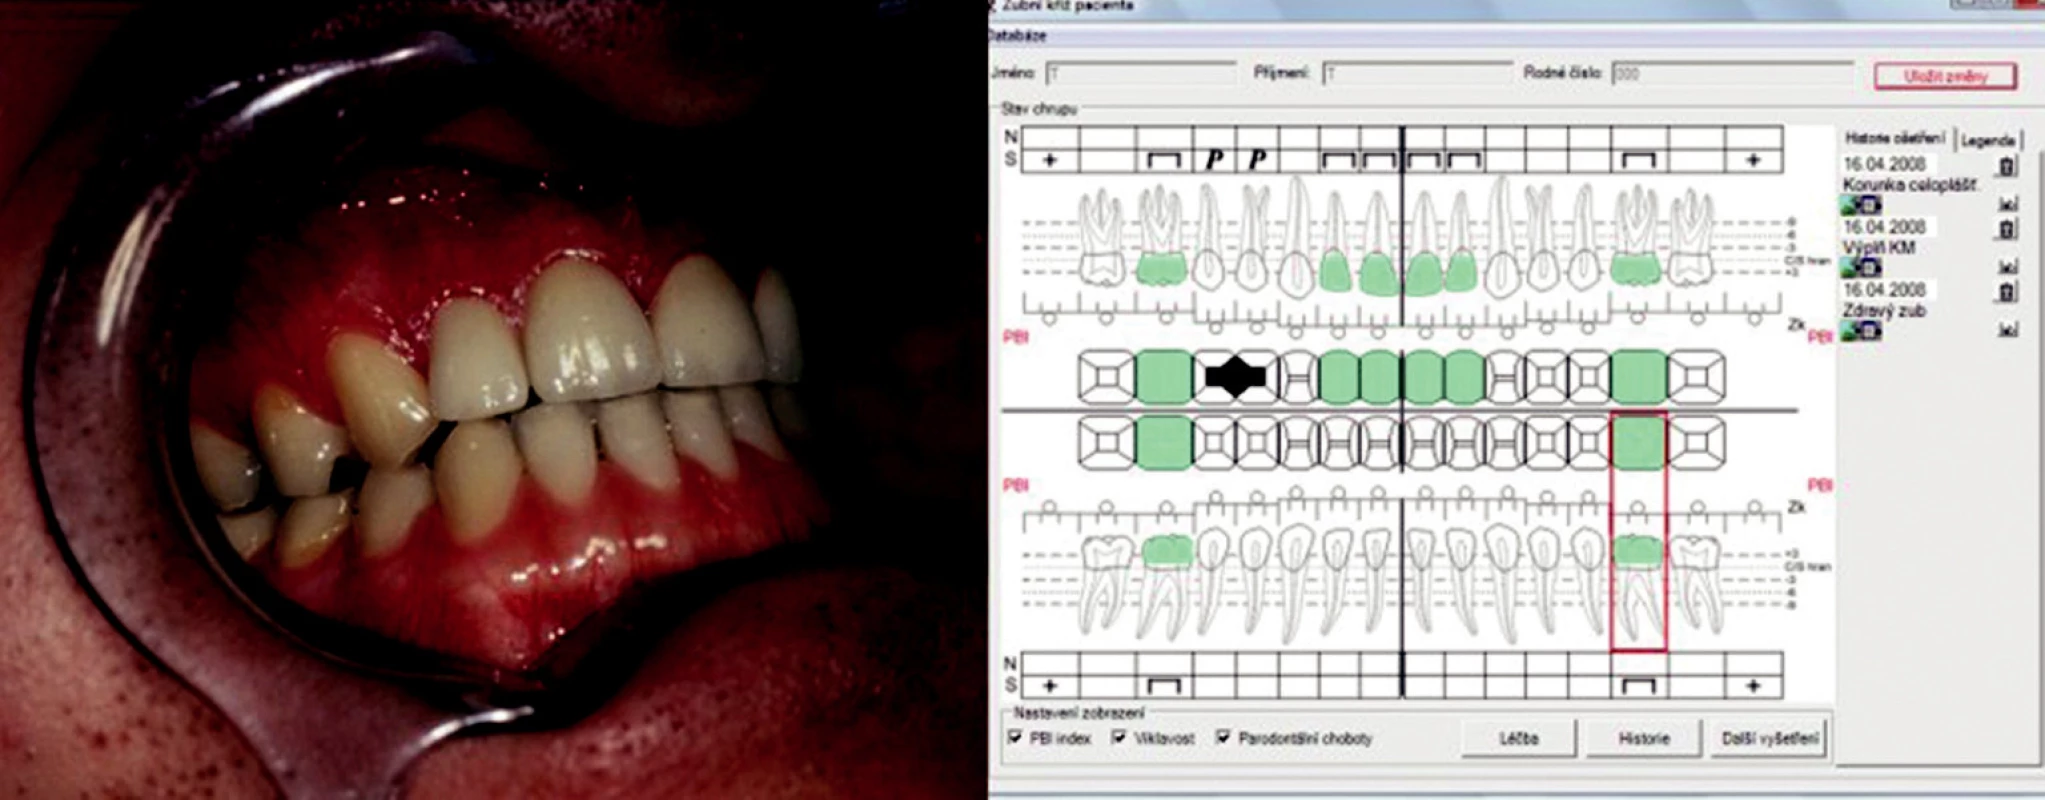 Celokeramické korunky in situ a analýza výsledku pomocí interaktivního zubního kříže.